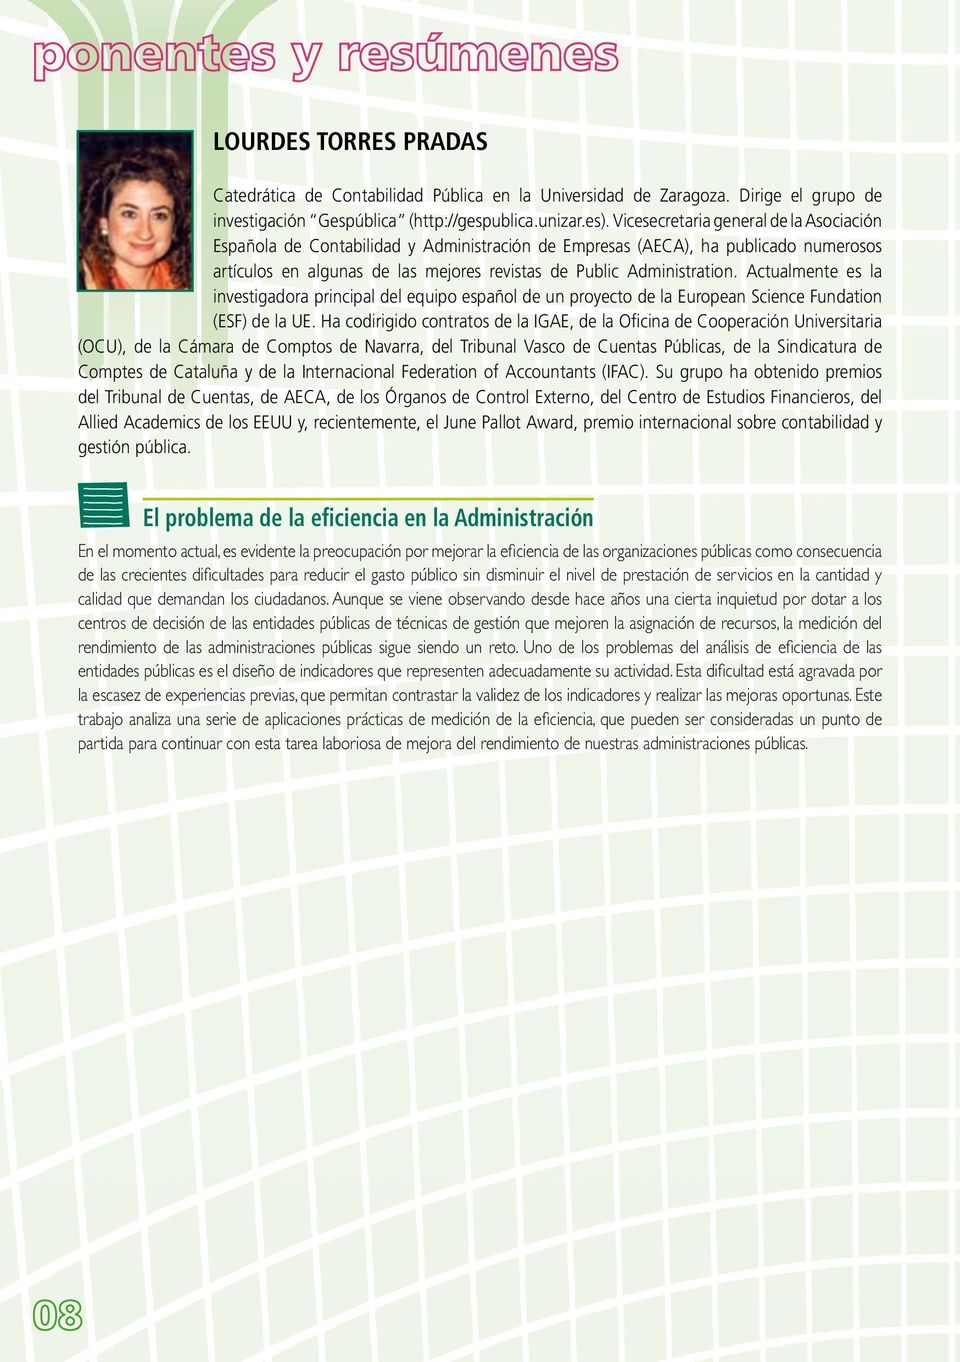 Actualmente es la investigadora principal del equipo español de un proyecto de la European Science Fundation (ESF) de la UE.